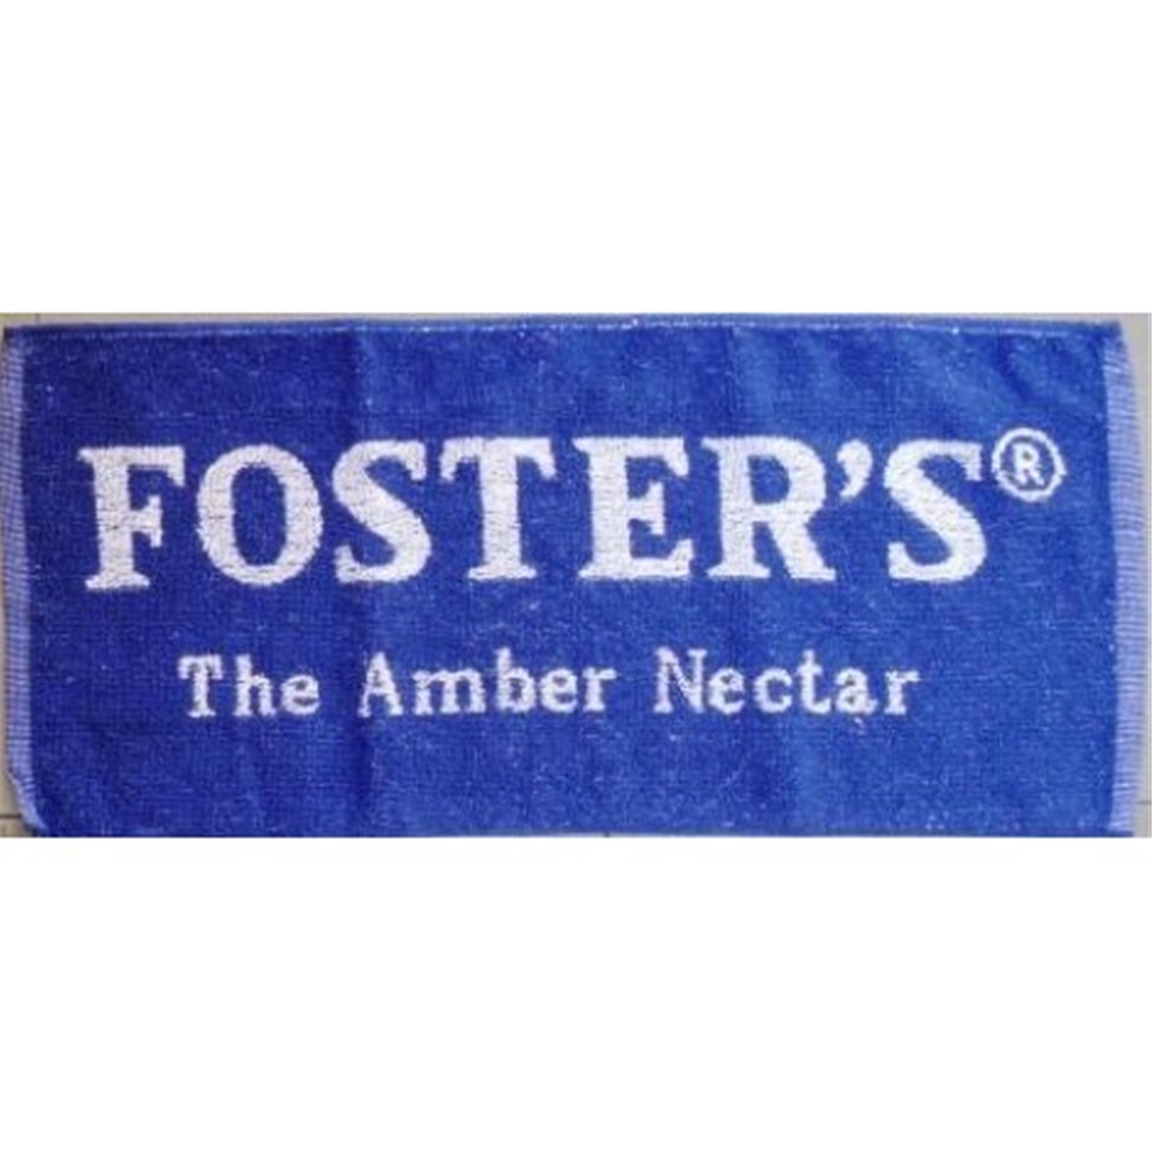 Fosters Pub Towel